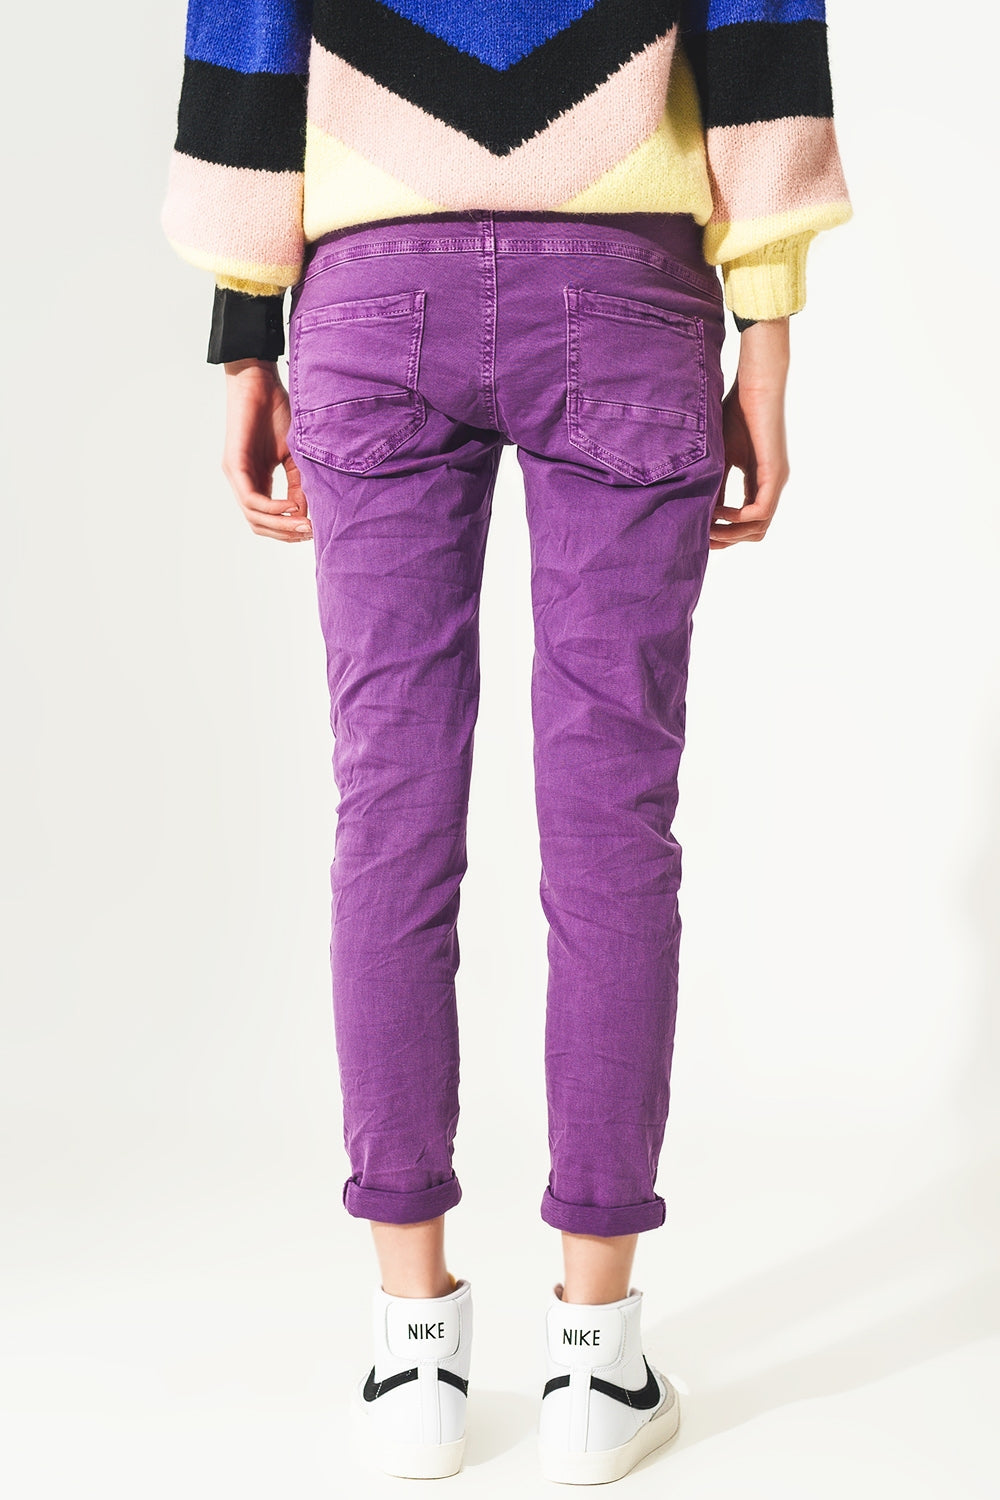 TEEK - Purple Exposed Buttons Skinny Jeans PANTS TEEK M   